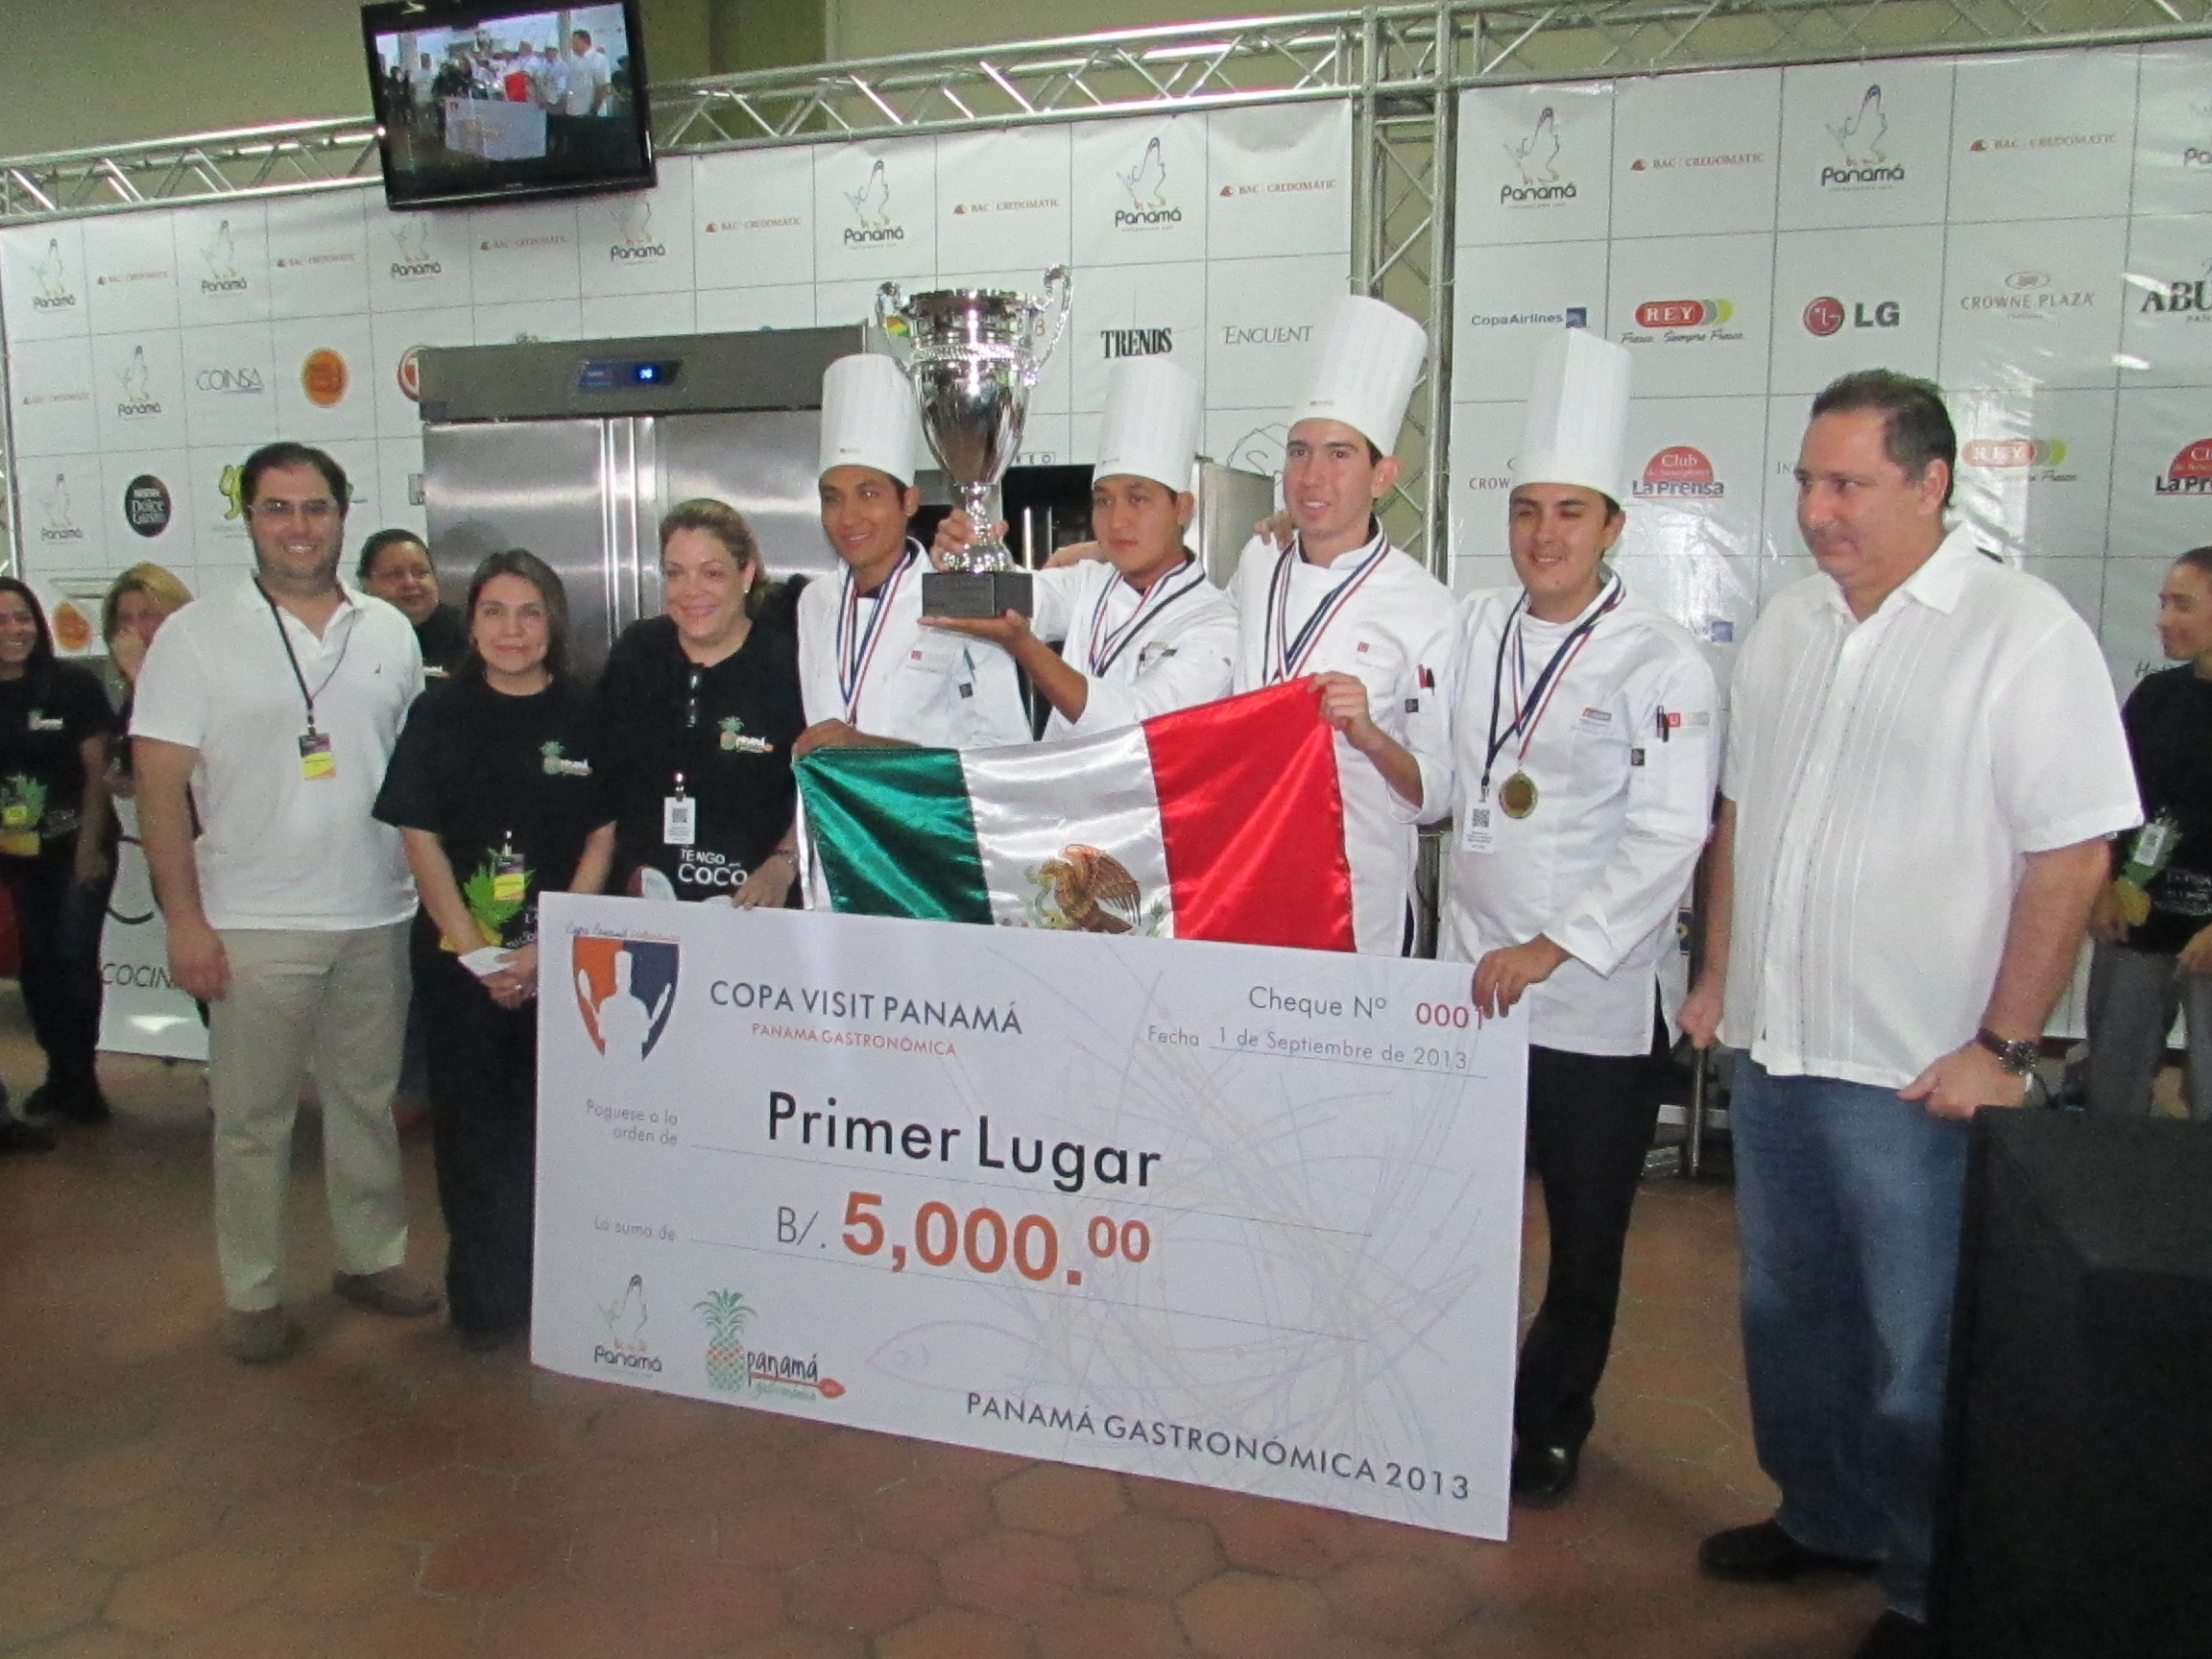 Feria Internacional Panamá Gastronómica 2013 fue un gran éxito